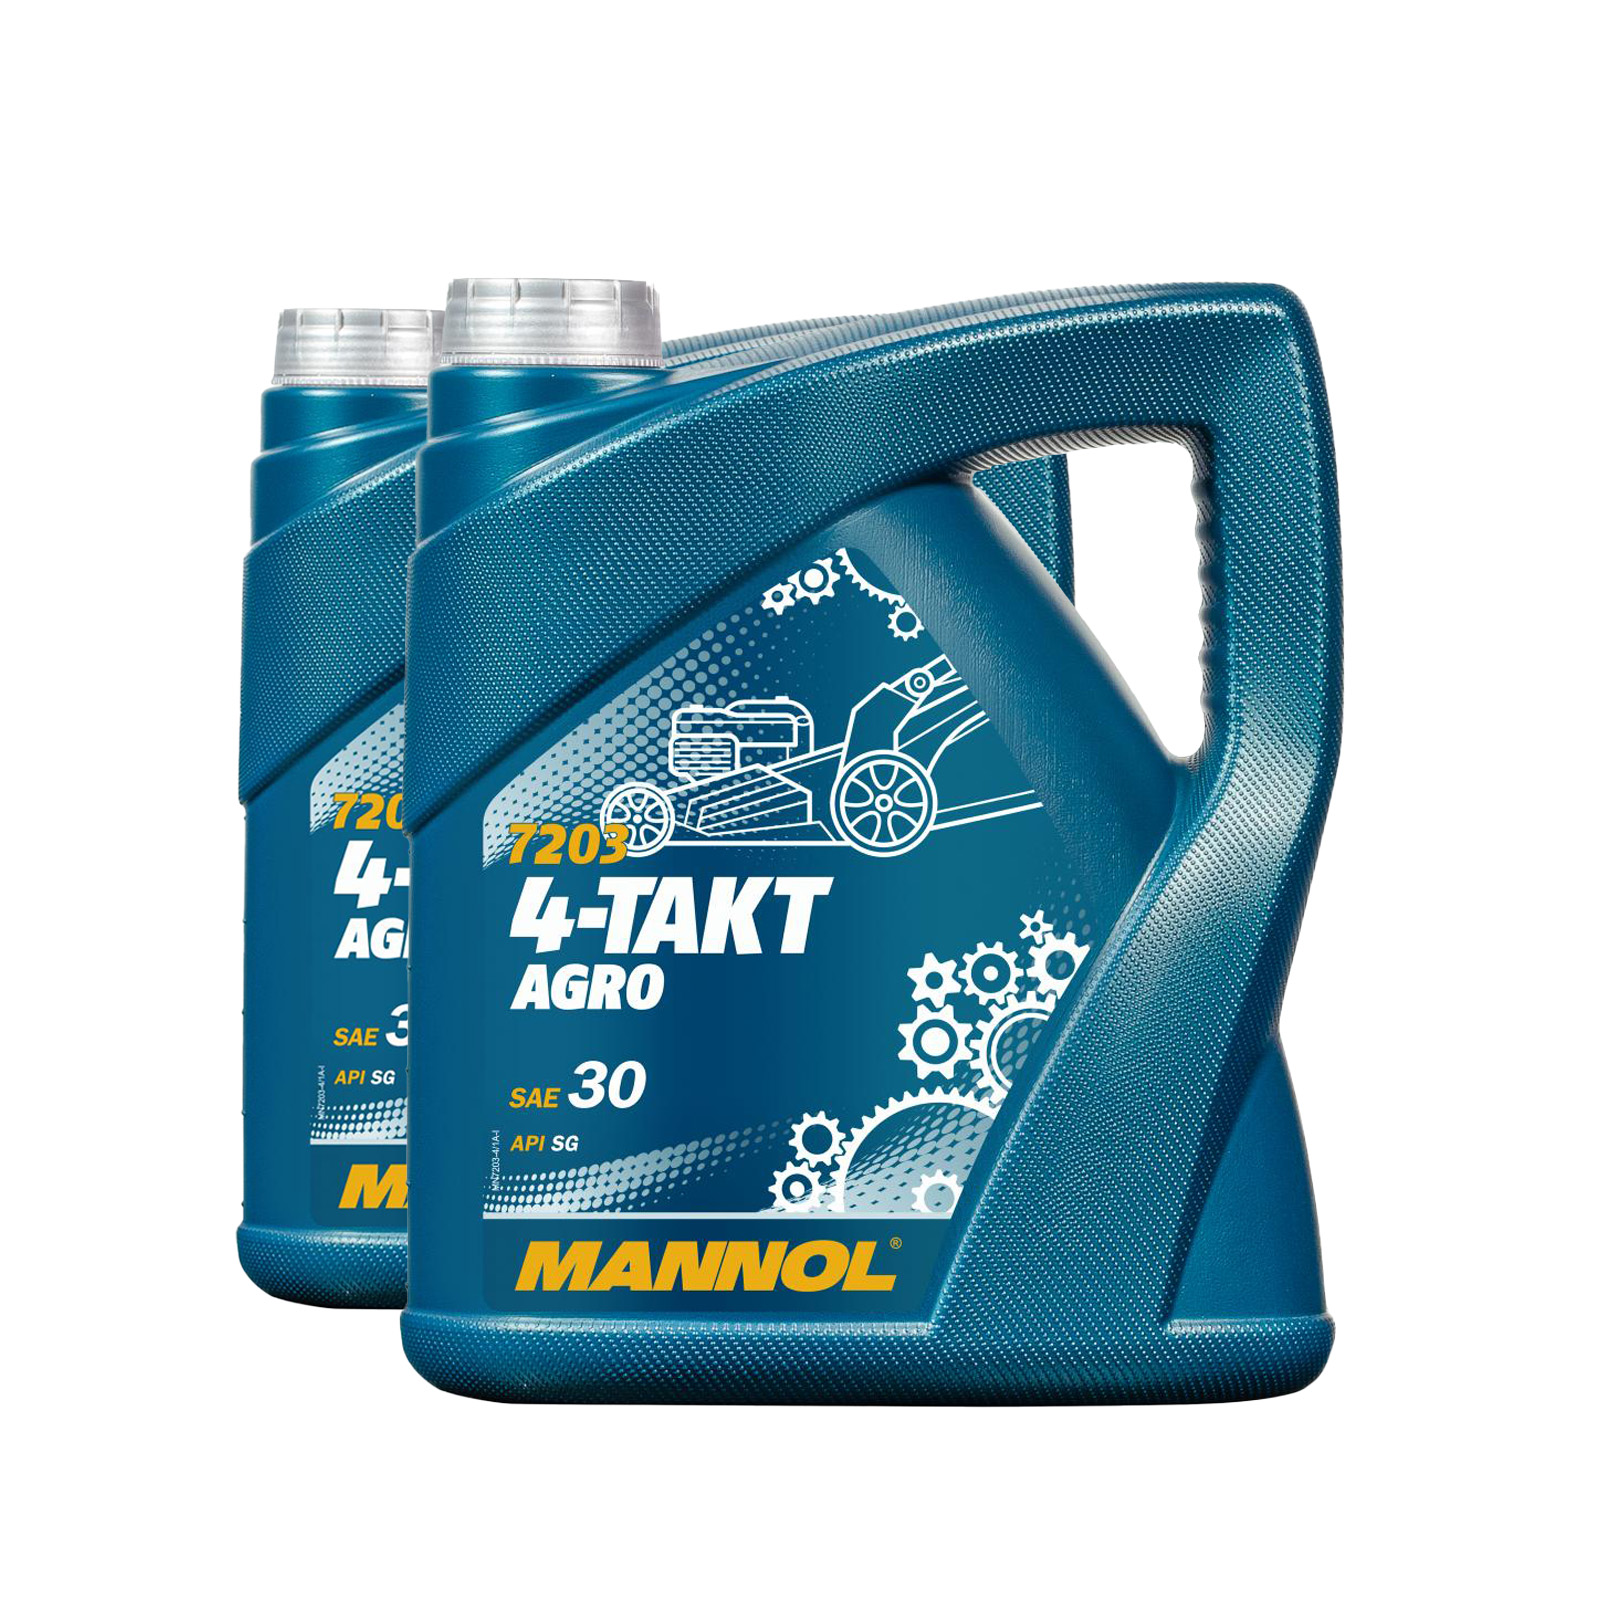 8 Liter (2x4) MANNOL 4-Takt Agro 7203 SAE 30 API SL Motoröl für Gartengeräte 